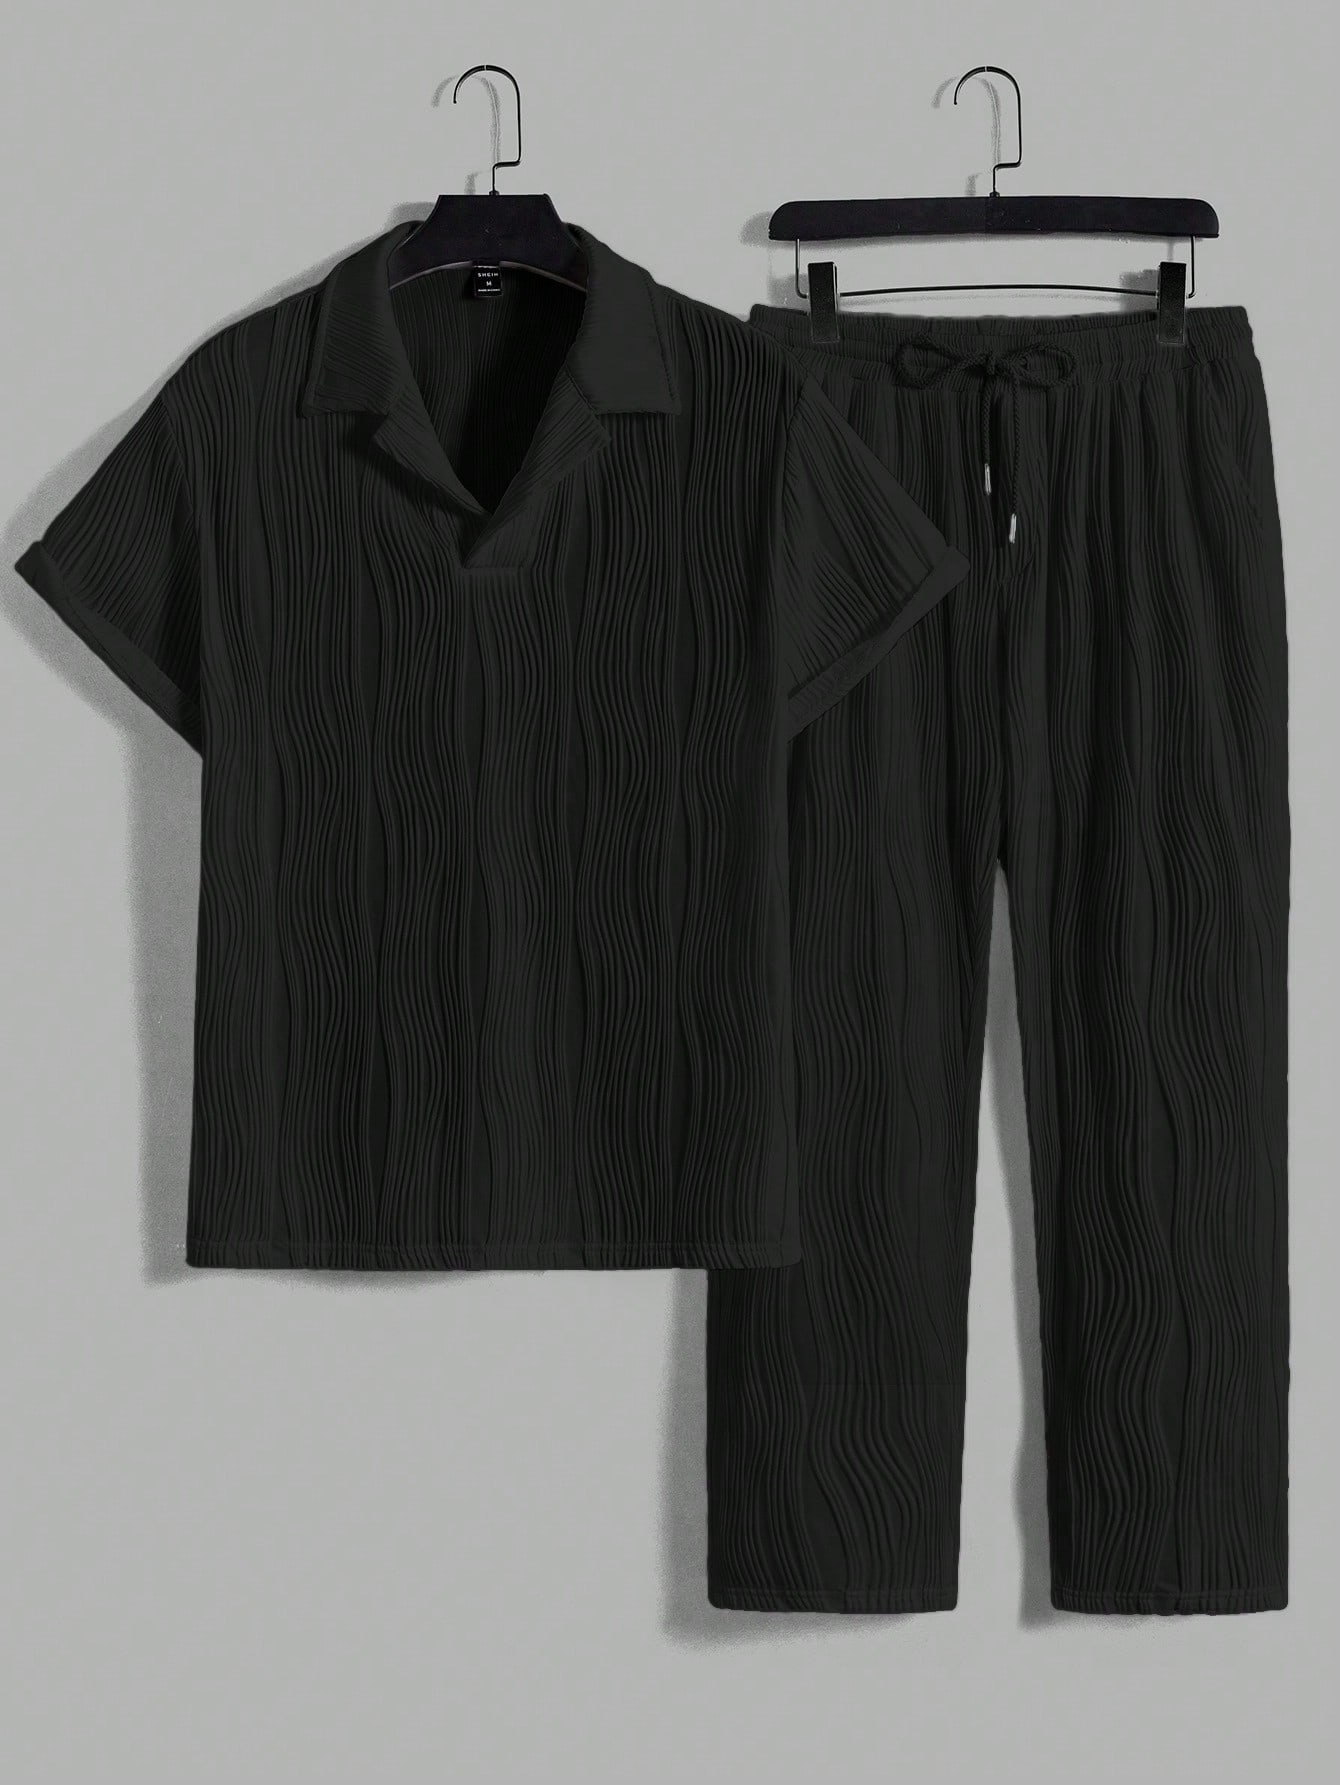 Мужской комплект из рубашки и брюк с монохромной текстурой Manfinity Homme, черный рубашка женская джинсовая с отложным воротником модная блузка из денима с длинными рукавами джинсовая мягкая блузка синего цвета весна л